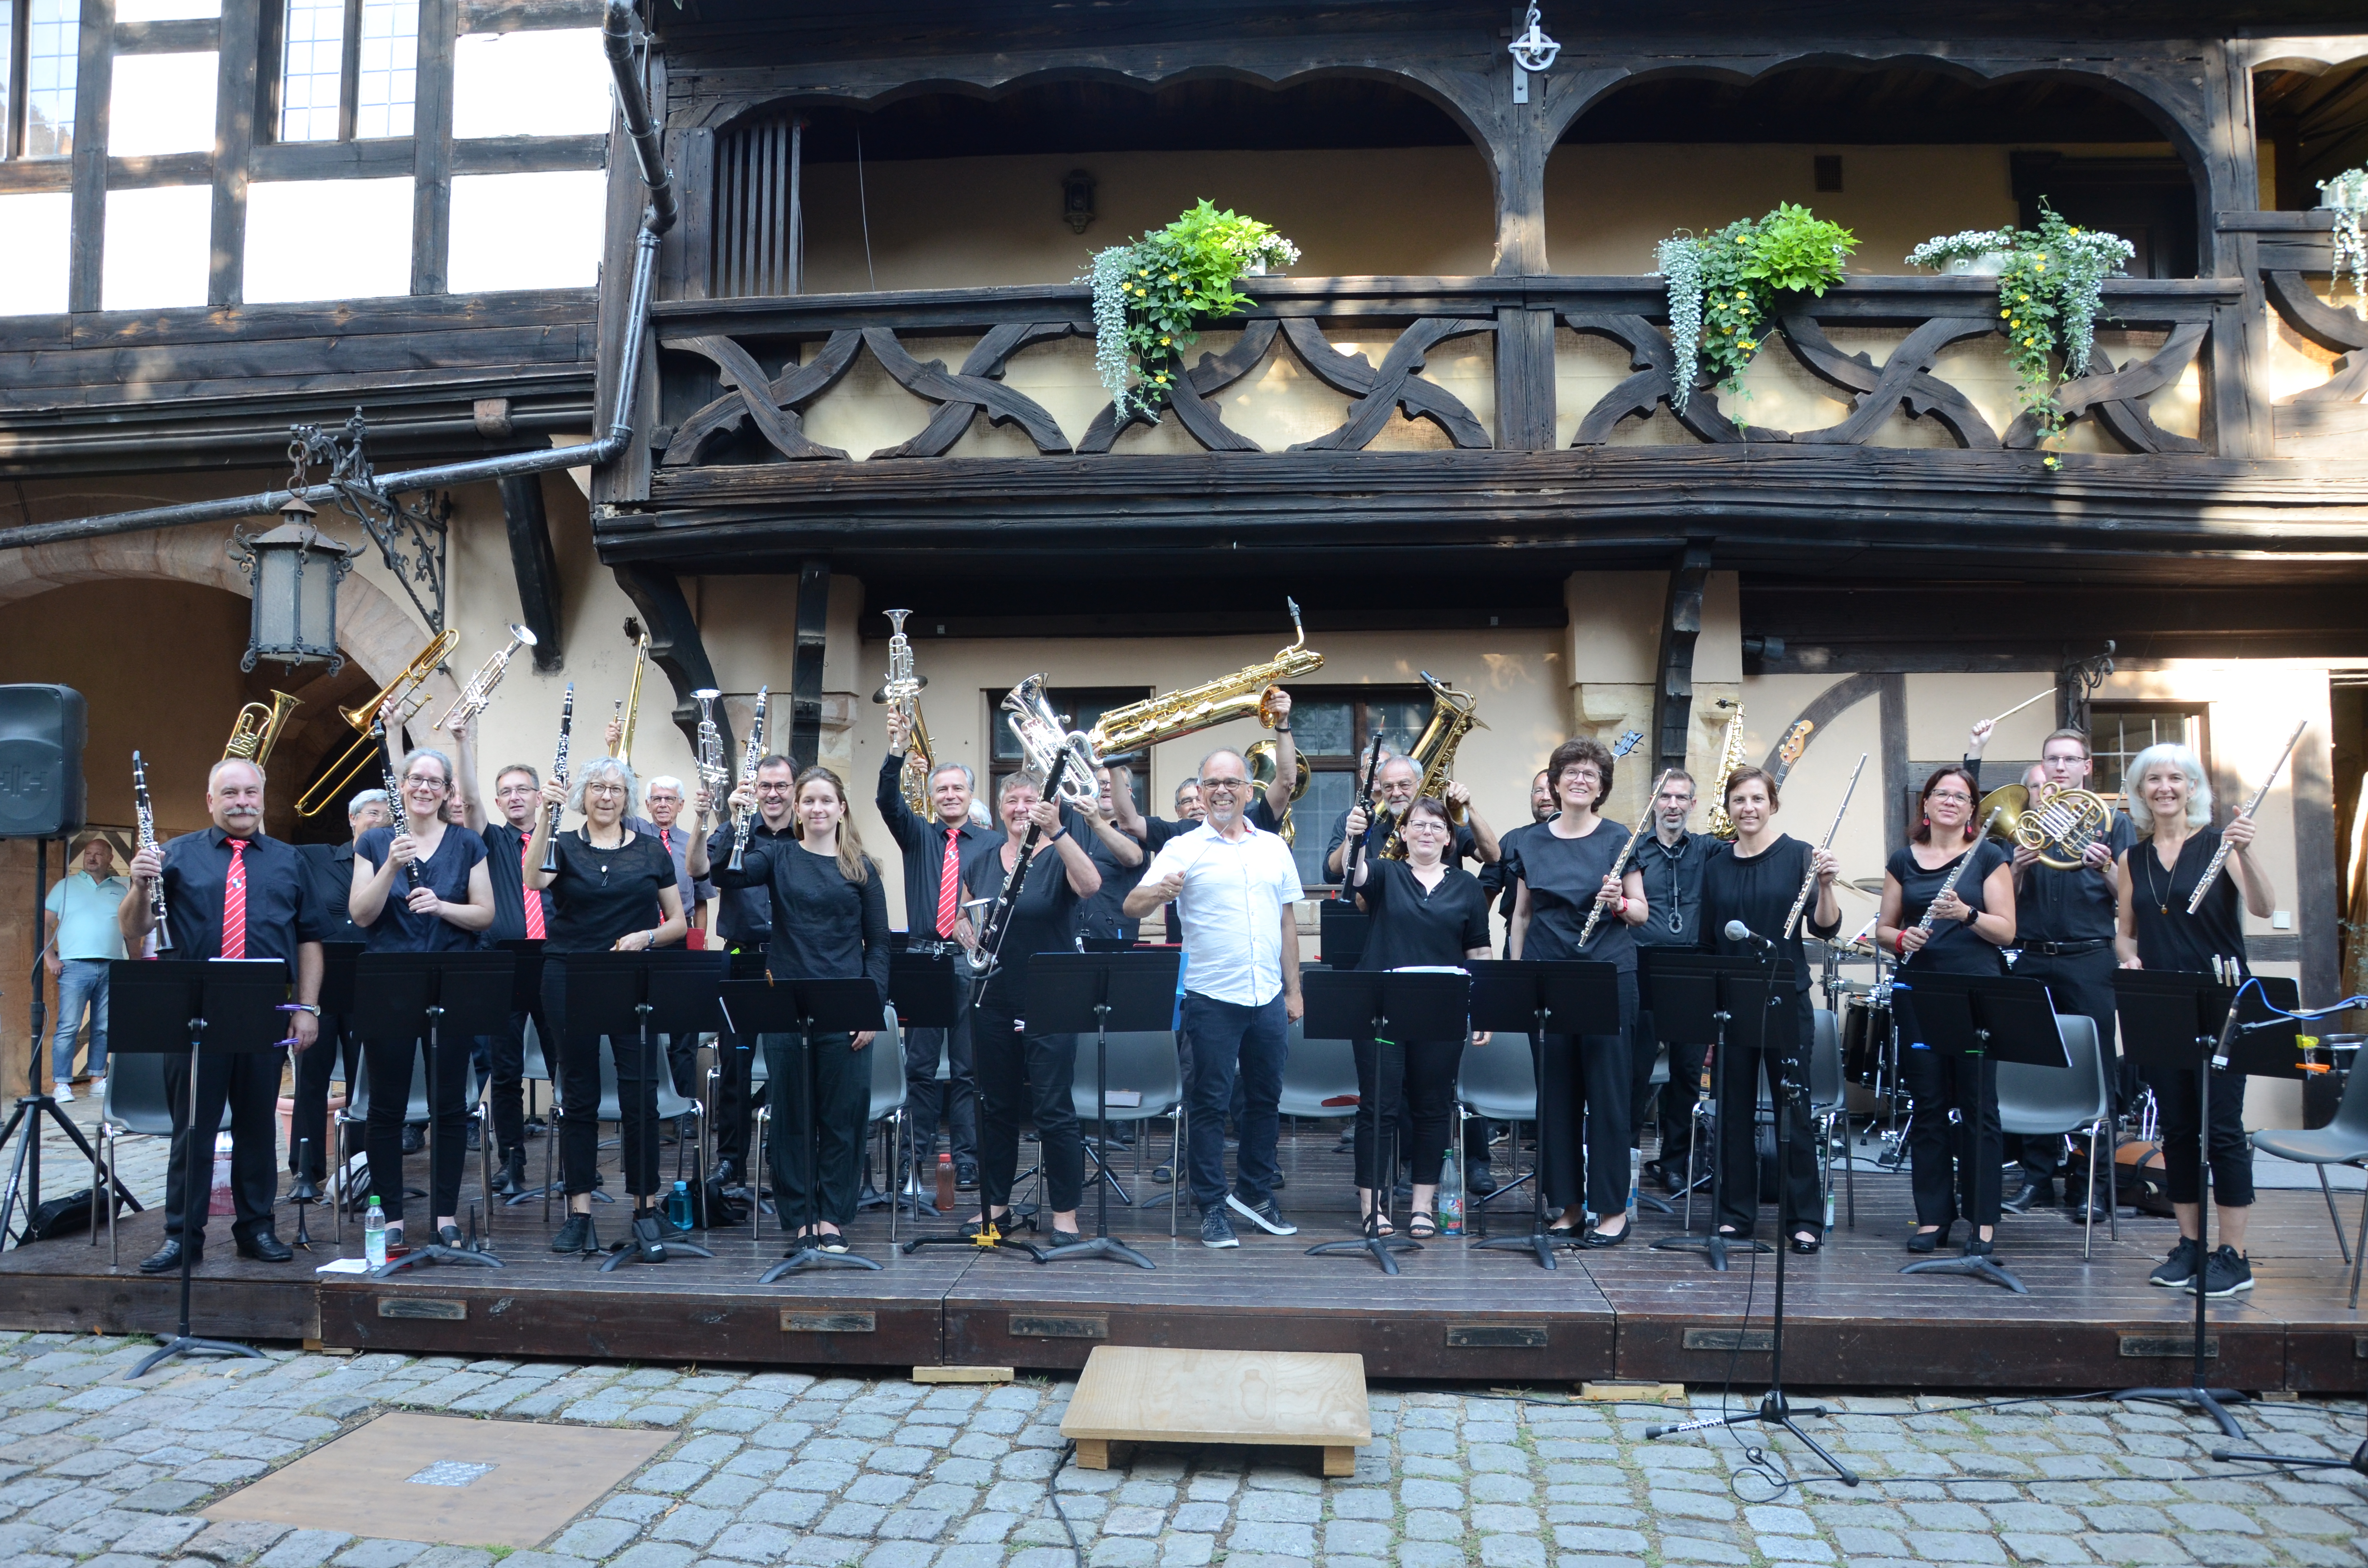  Das Wiedereinsteigerorchester 'Rother Stadtmusik' mit erhobenen Instrumenten 